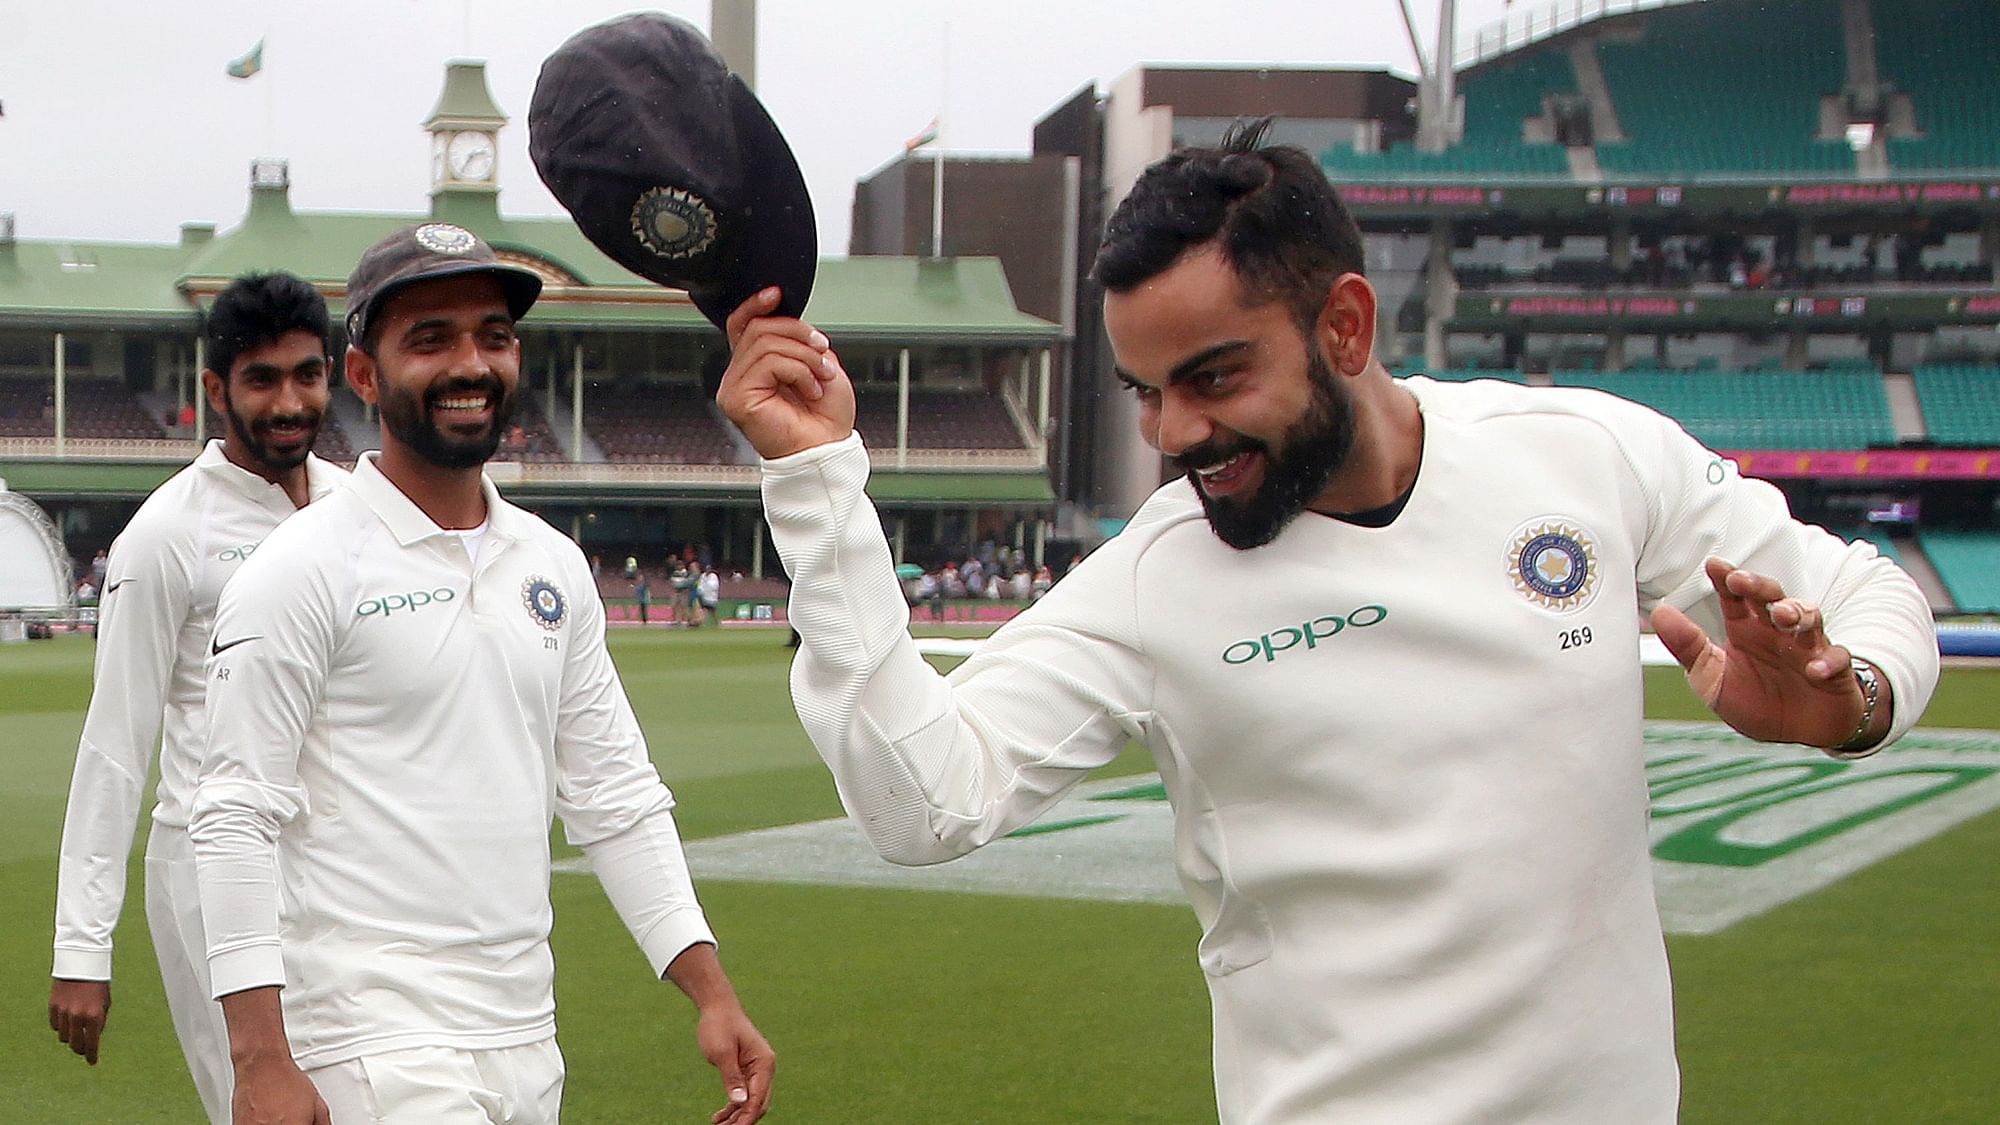 विराट कोहली और टीम इंडिया को ऑस्ट्रेलिया टेस्ट सीरीज में जीत पर पूर्व मुख्य चयनकर्ता और क्रिकेटर संदीप पाटिल ने बधाई दी है.